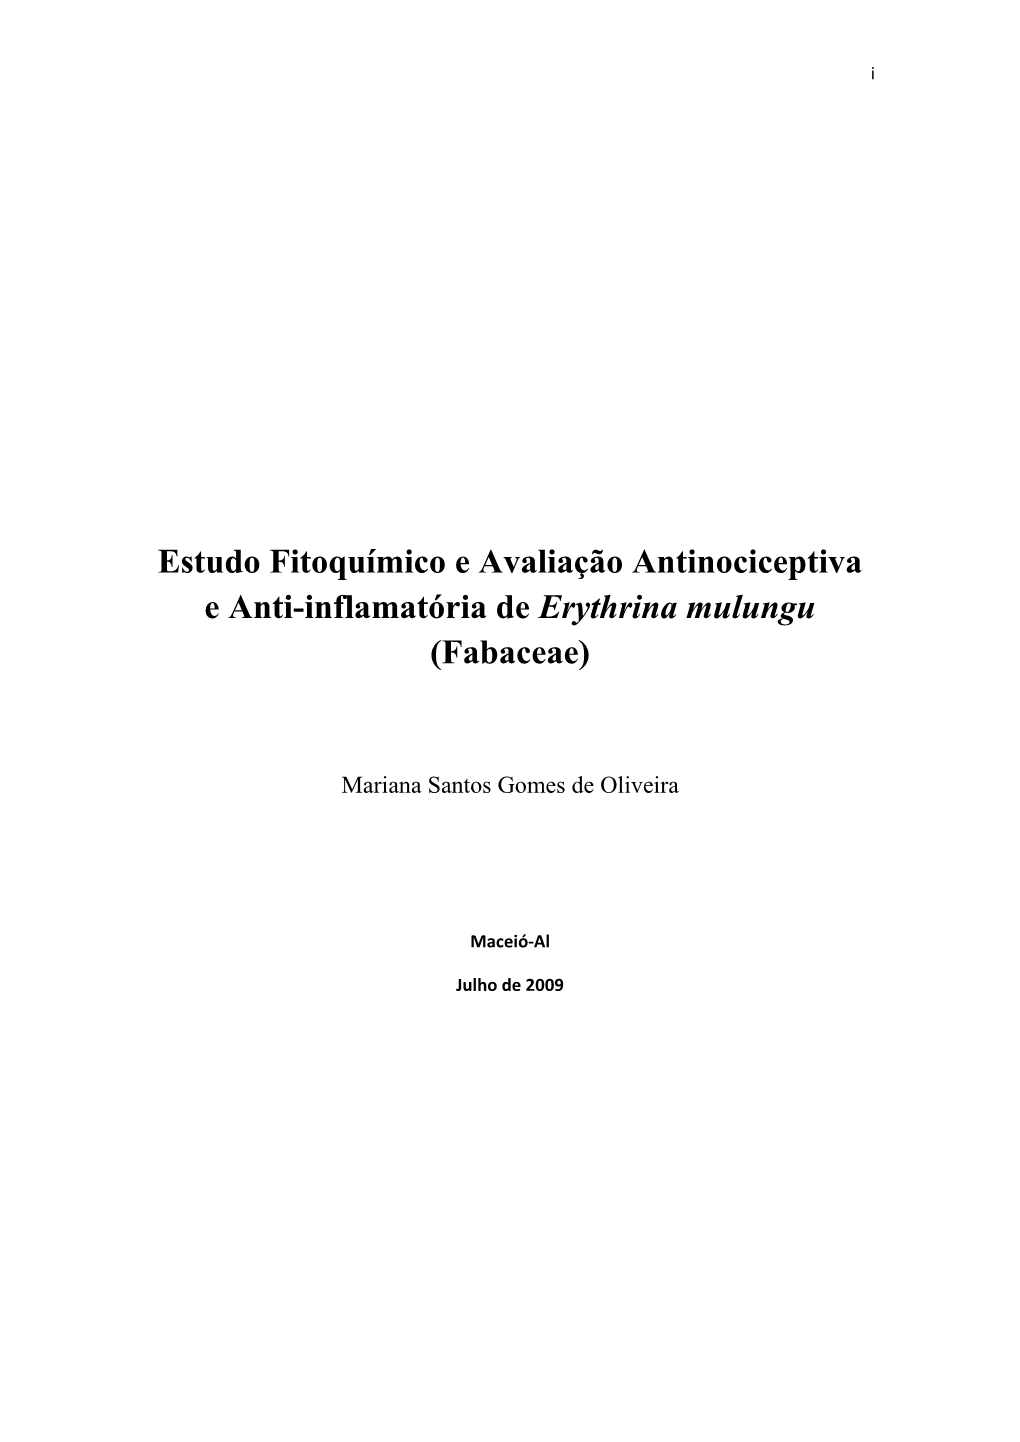 Estudo Fitoquímico E Avaliação Antinociceptiva E Anti-Inflamatória De Erythrina Mulungu (Fabaceae)